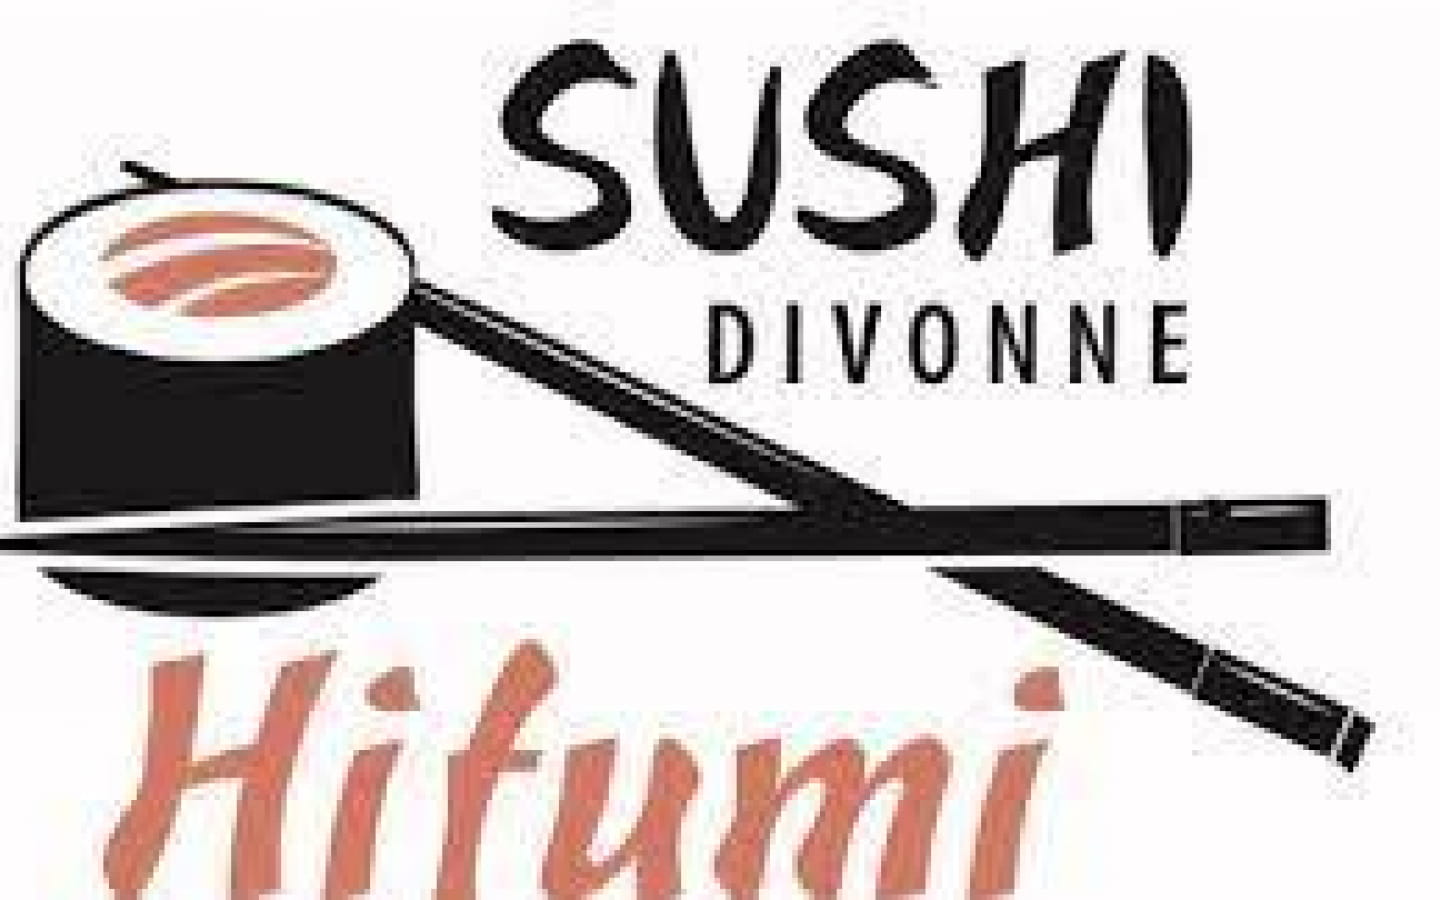 Sushi Divonne Hifumi